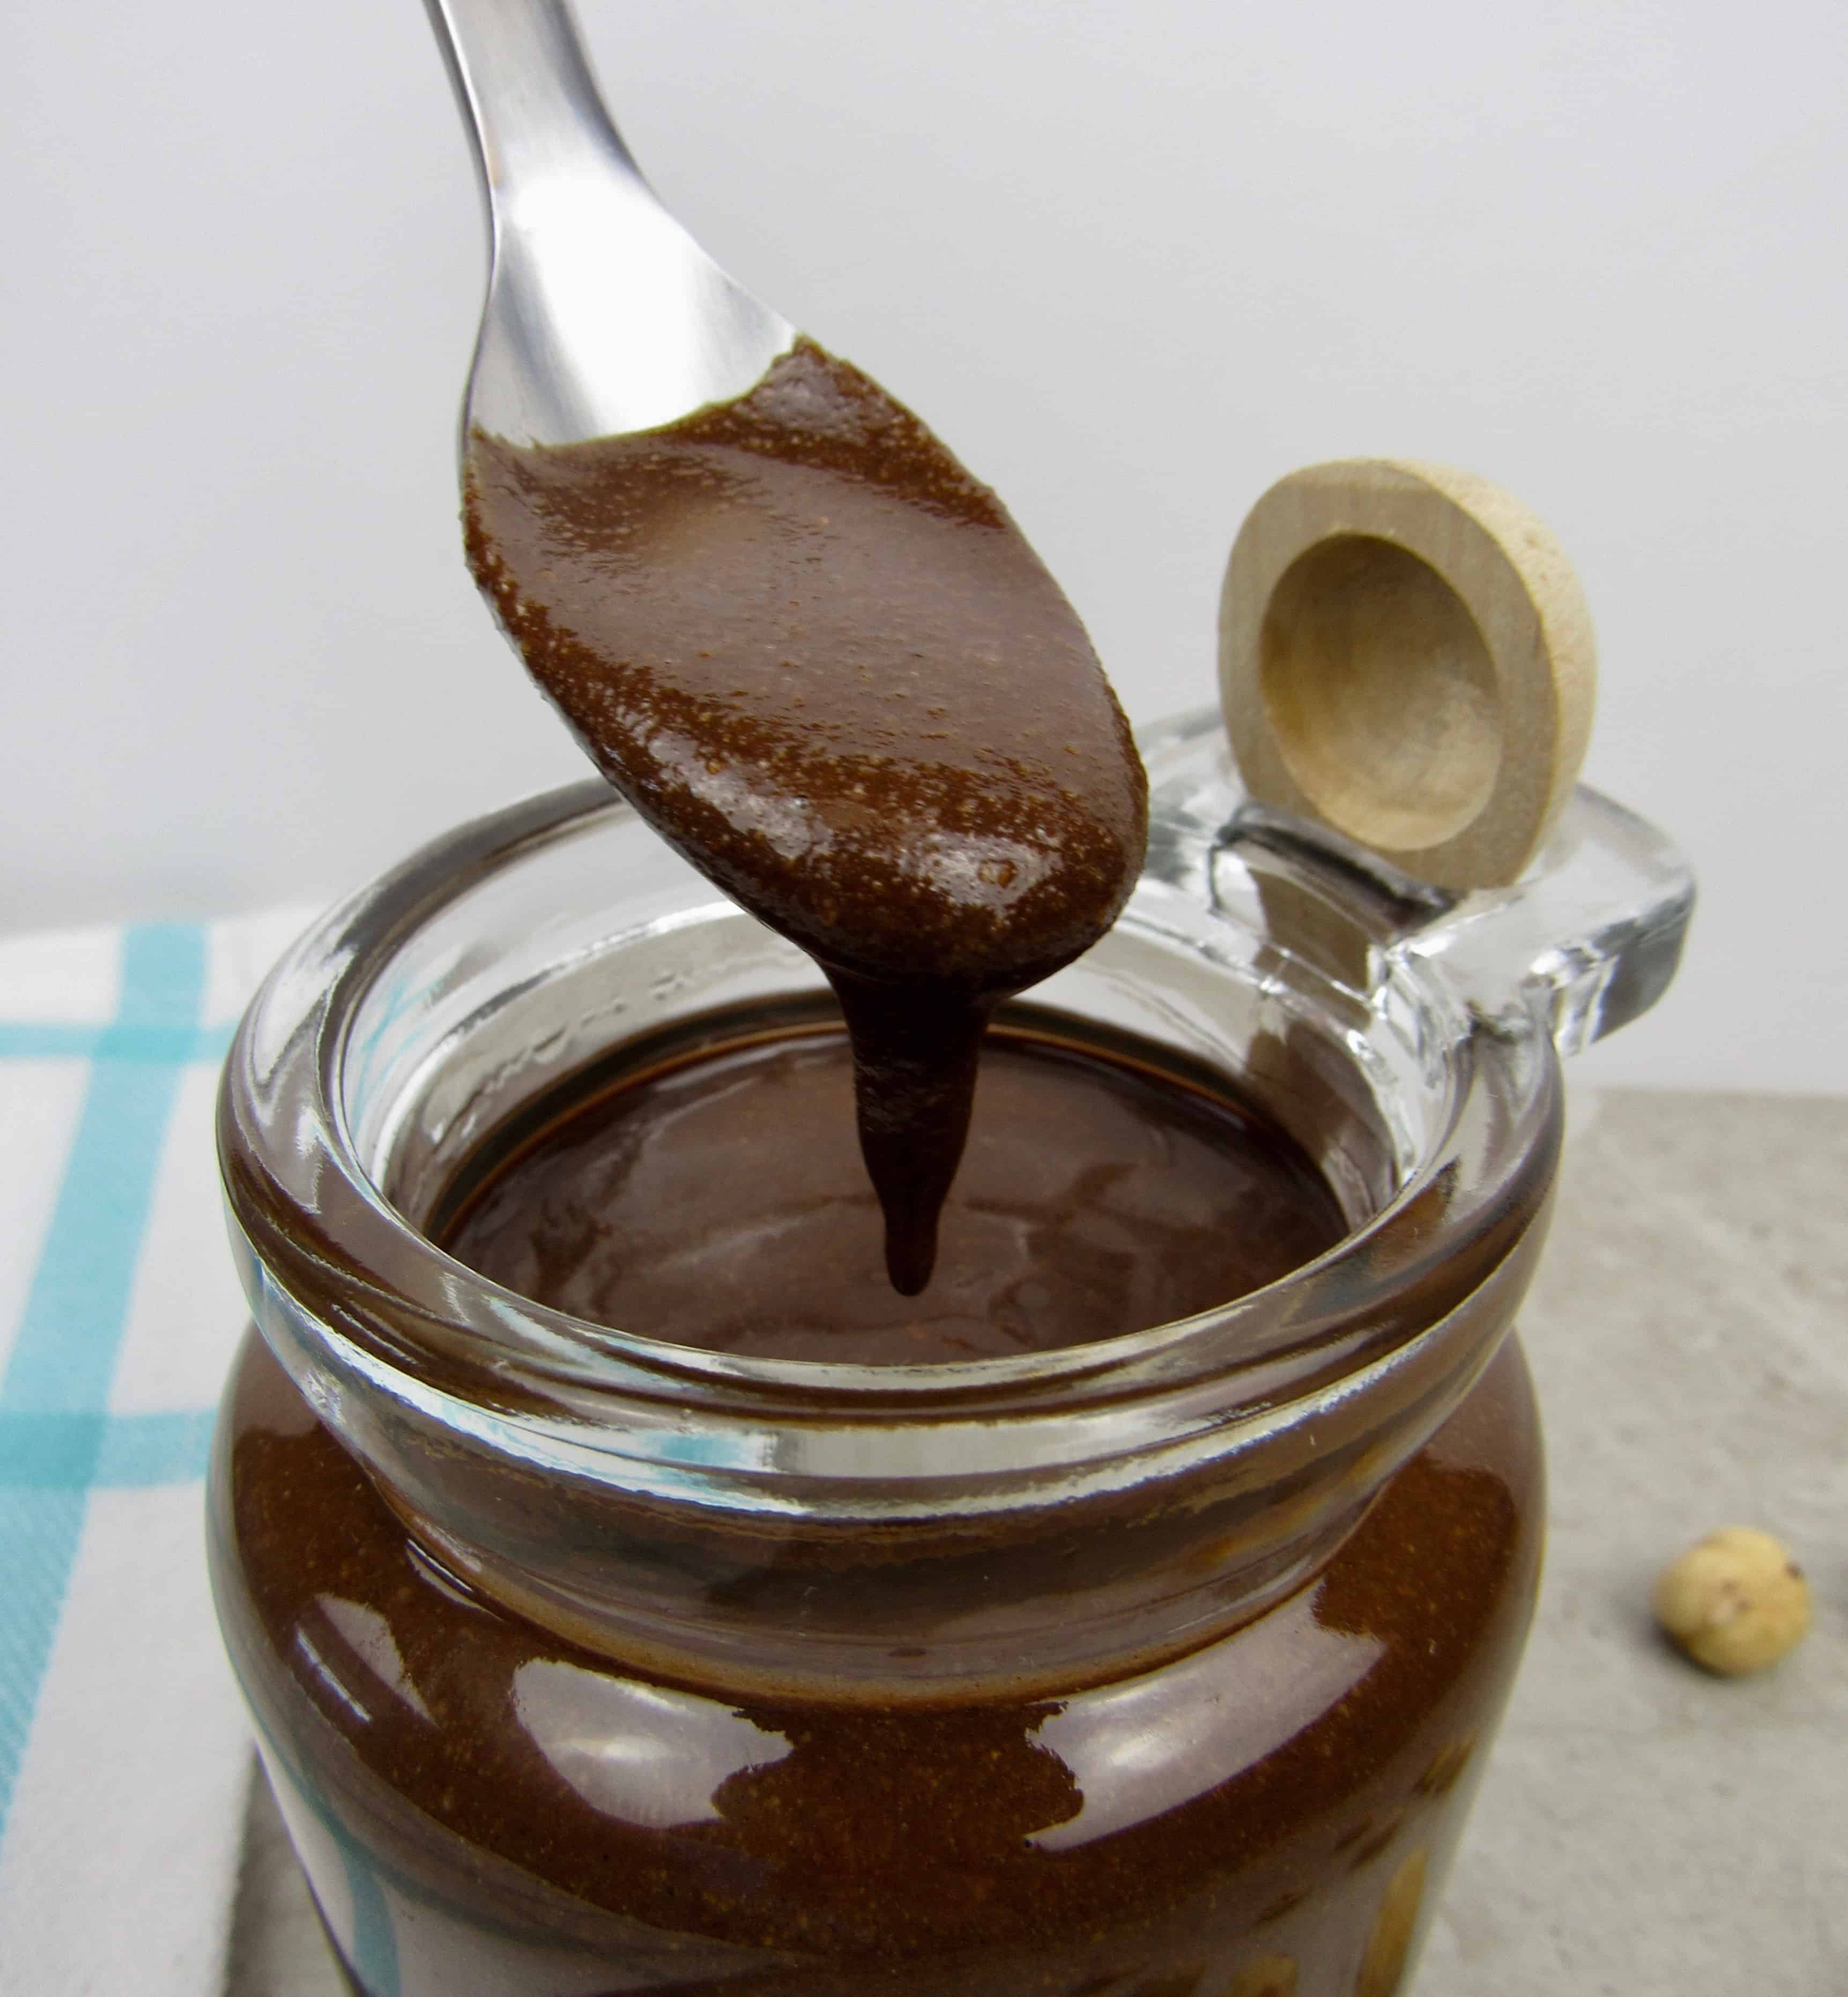 Sugar-Free Nutella (Hazelnut Spread) - Keto and Low Carb